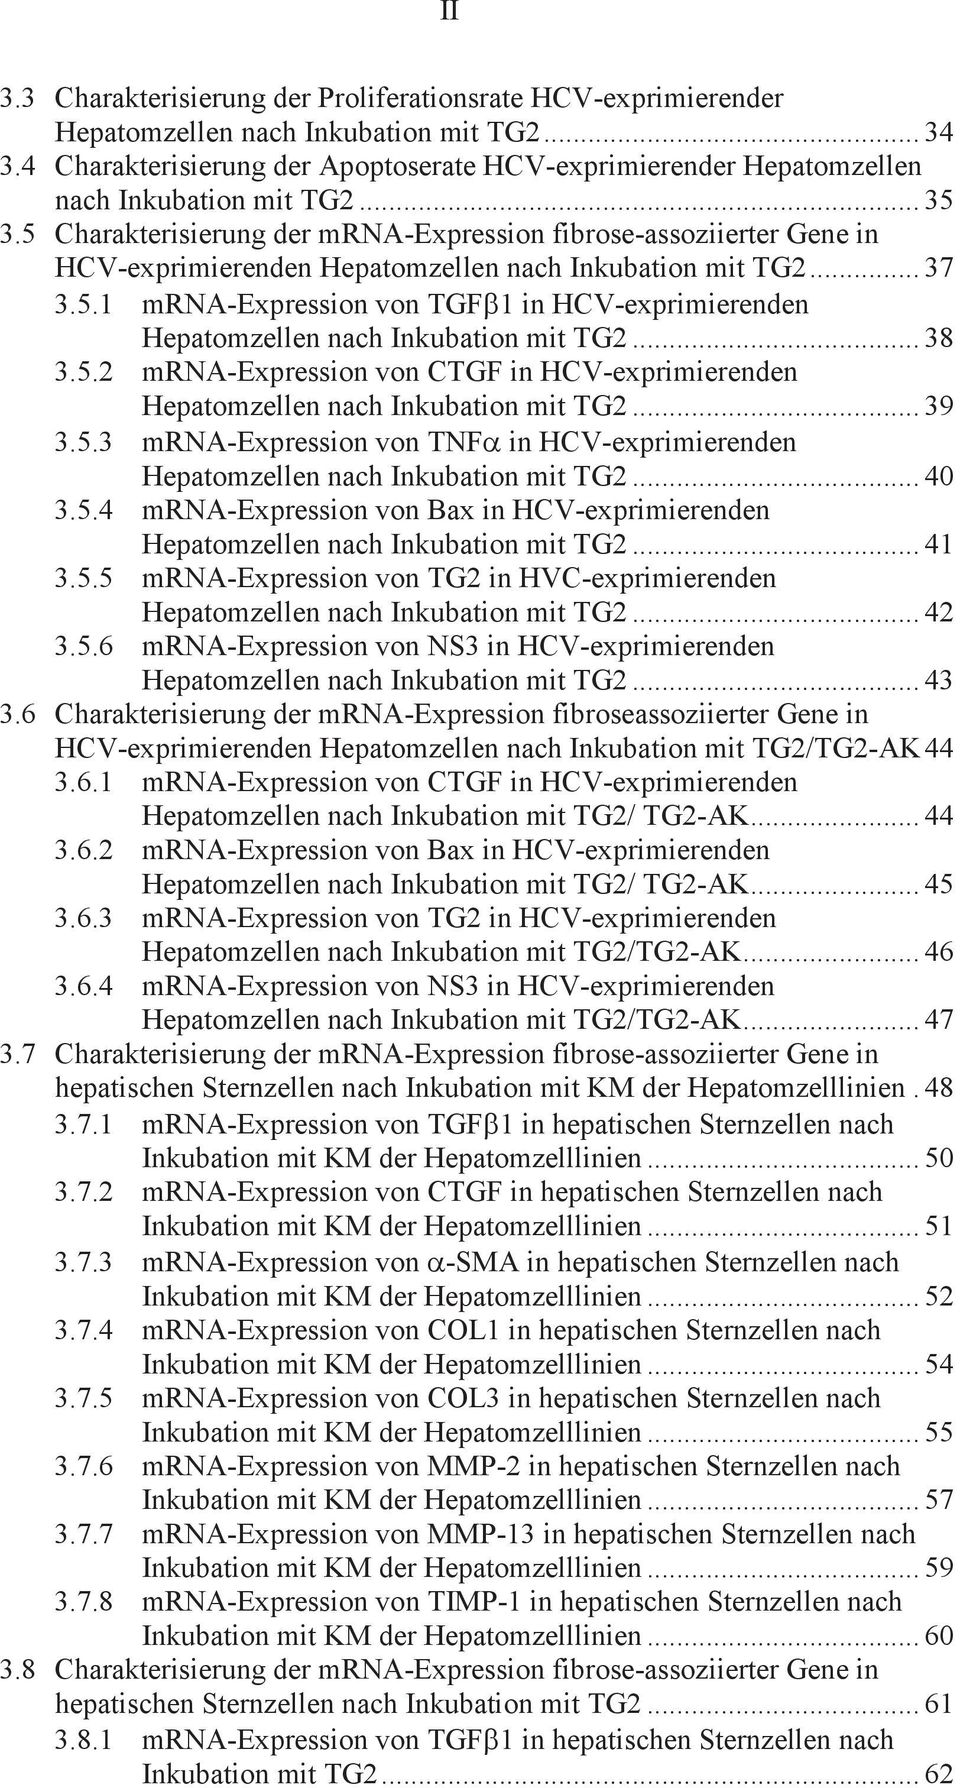 5 Charakterisierung der mrna-expression fibrose-assoziierter Gene in HCV-exprimierenden Hepatomzellen nach Inkubation mit TG2... 37 3.5.1 mrna-expression von TGFb1 in HCV-exprimierenden Hepatomzellen nach Inkubation mit TG2.